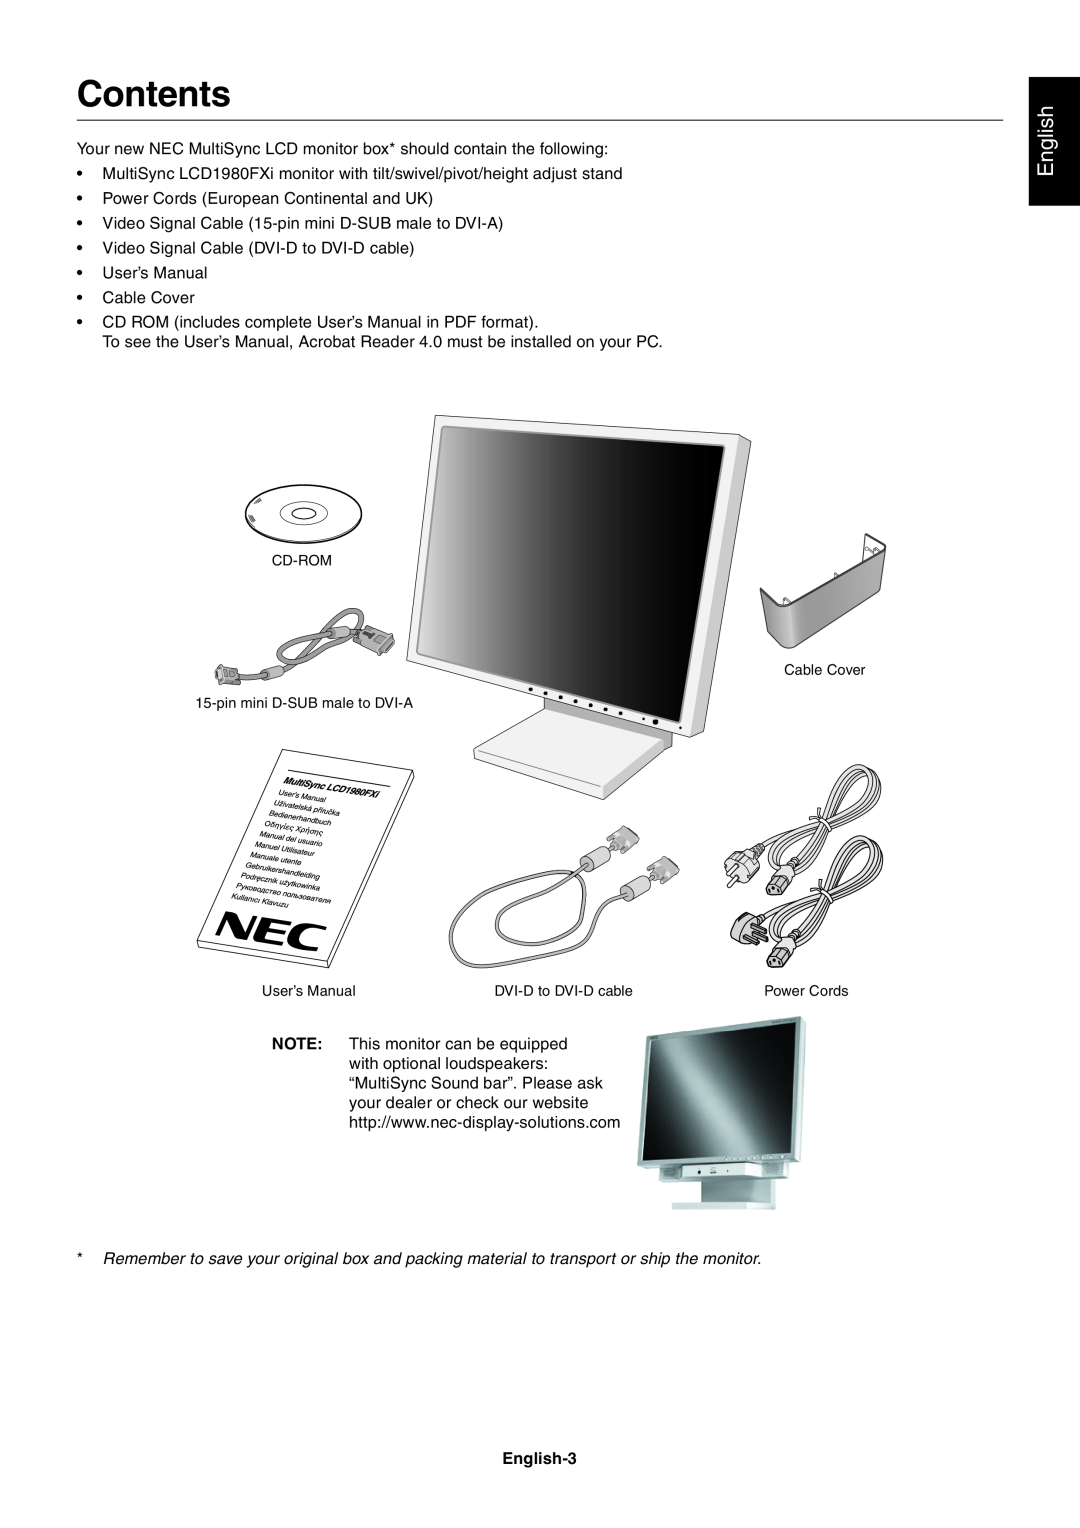 NEC 1980FXi user manual Contents, English-3 